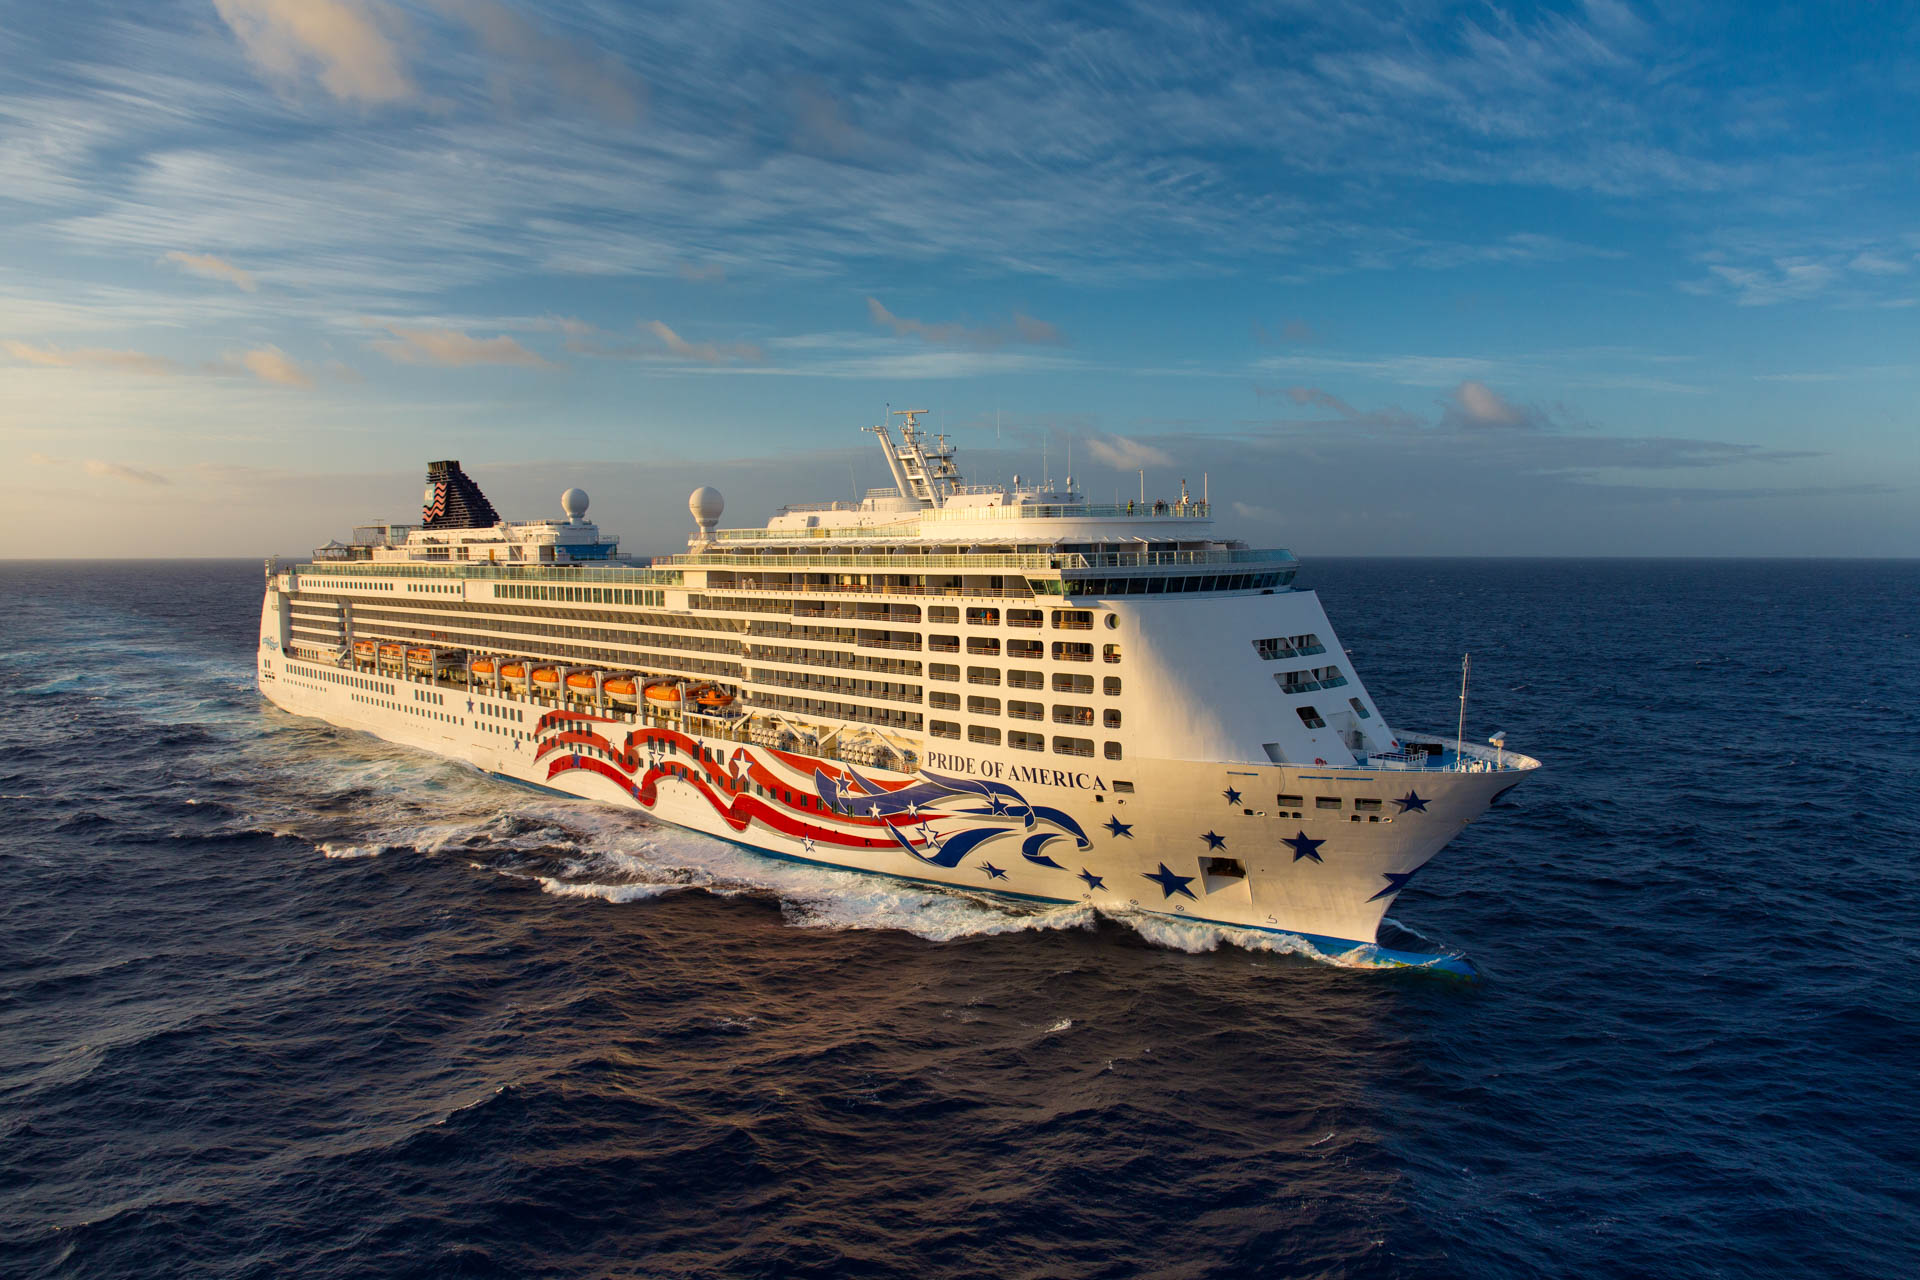 ncl hawaiian cruise 2022